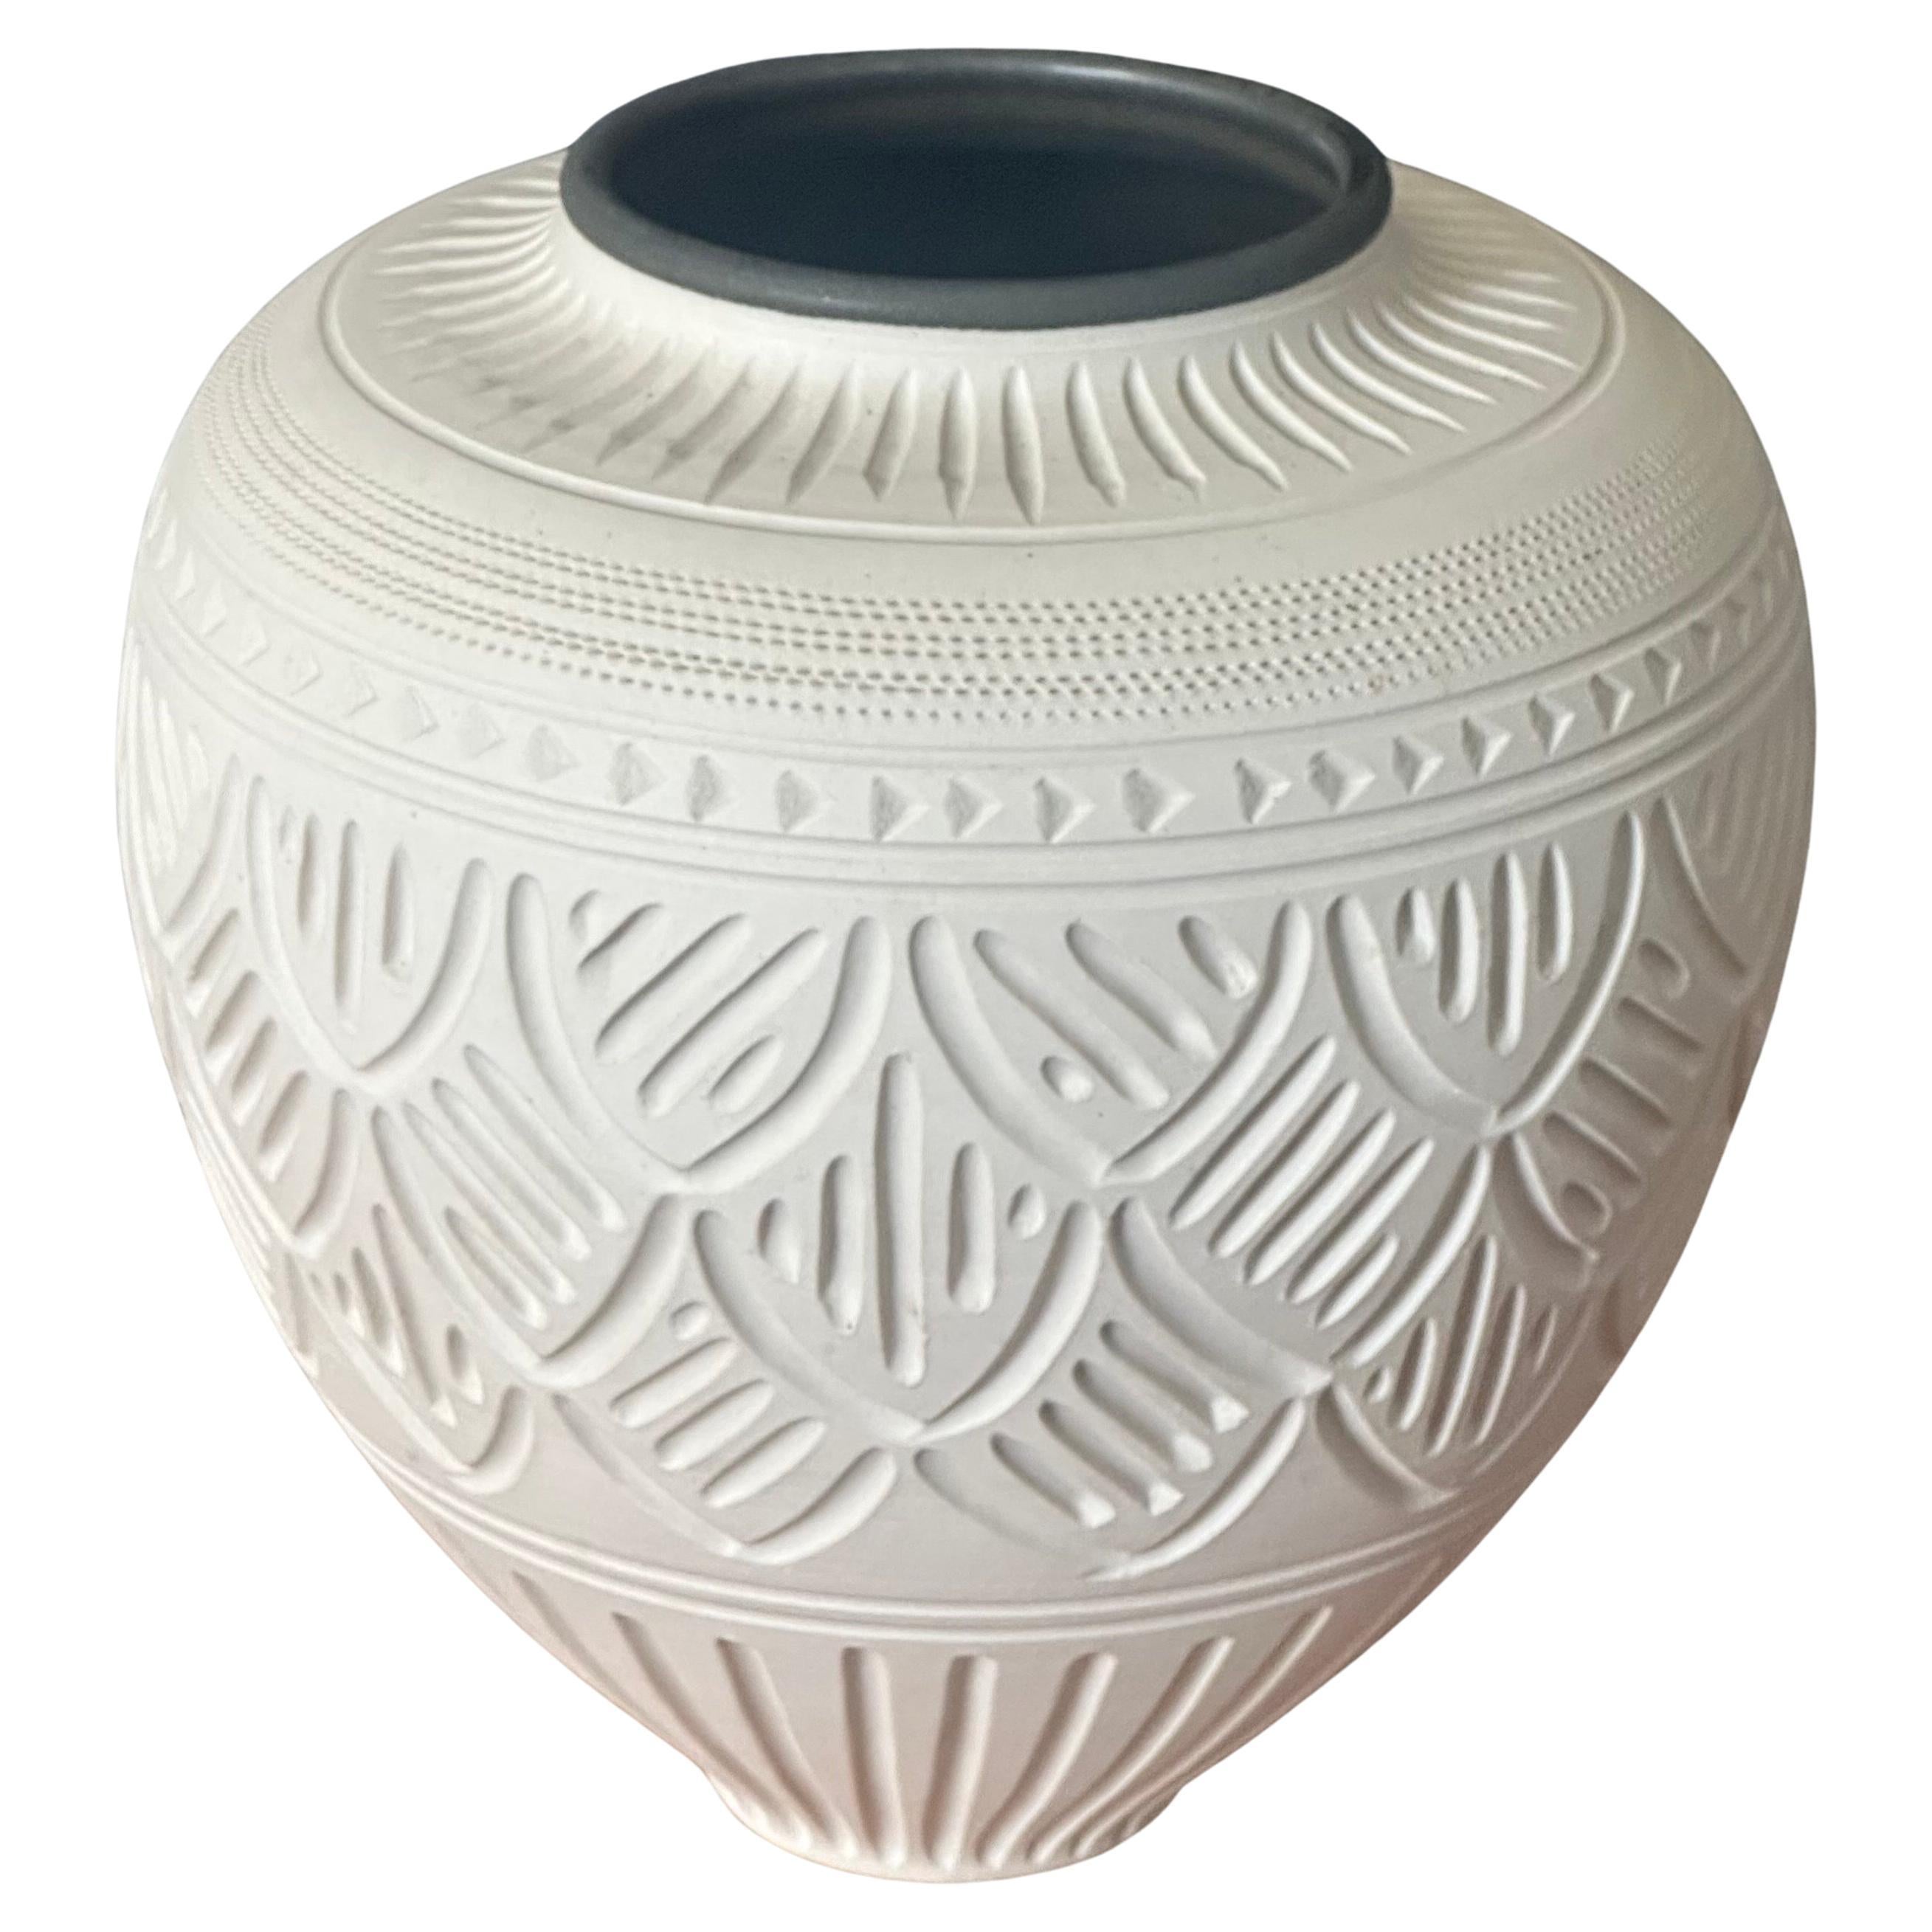 Einfach herrlich eingeschnittene geometrische Design Biskuit-Porzellan-Vase von Nancy Smith, ca. 1990er Jahre Die Vase hat eine schwarze Auskleidung an der Lippe der Vase, wie ist sehr attraktiv.  Es ist in sehr gutem Vintage-Zustand ohne Chips oder